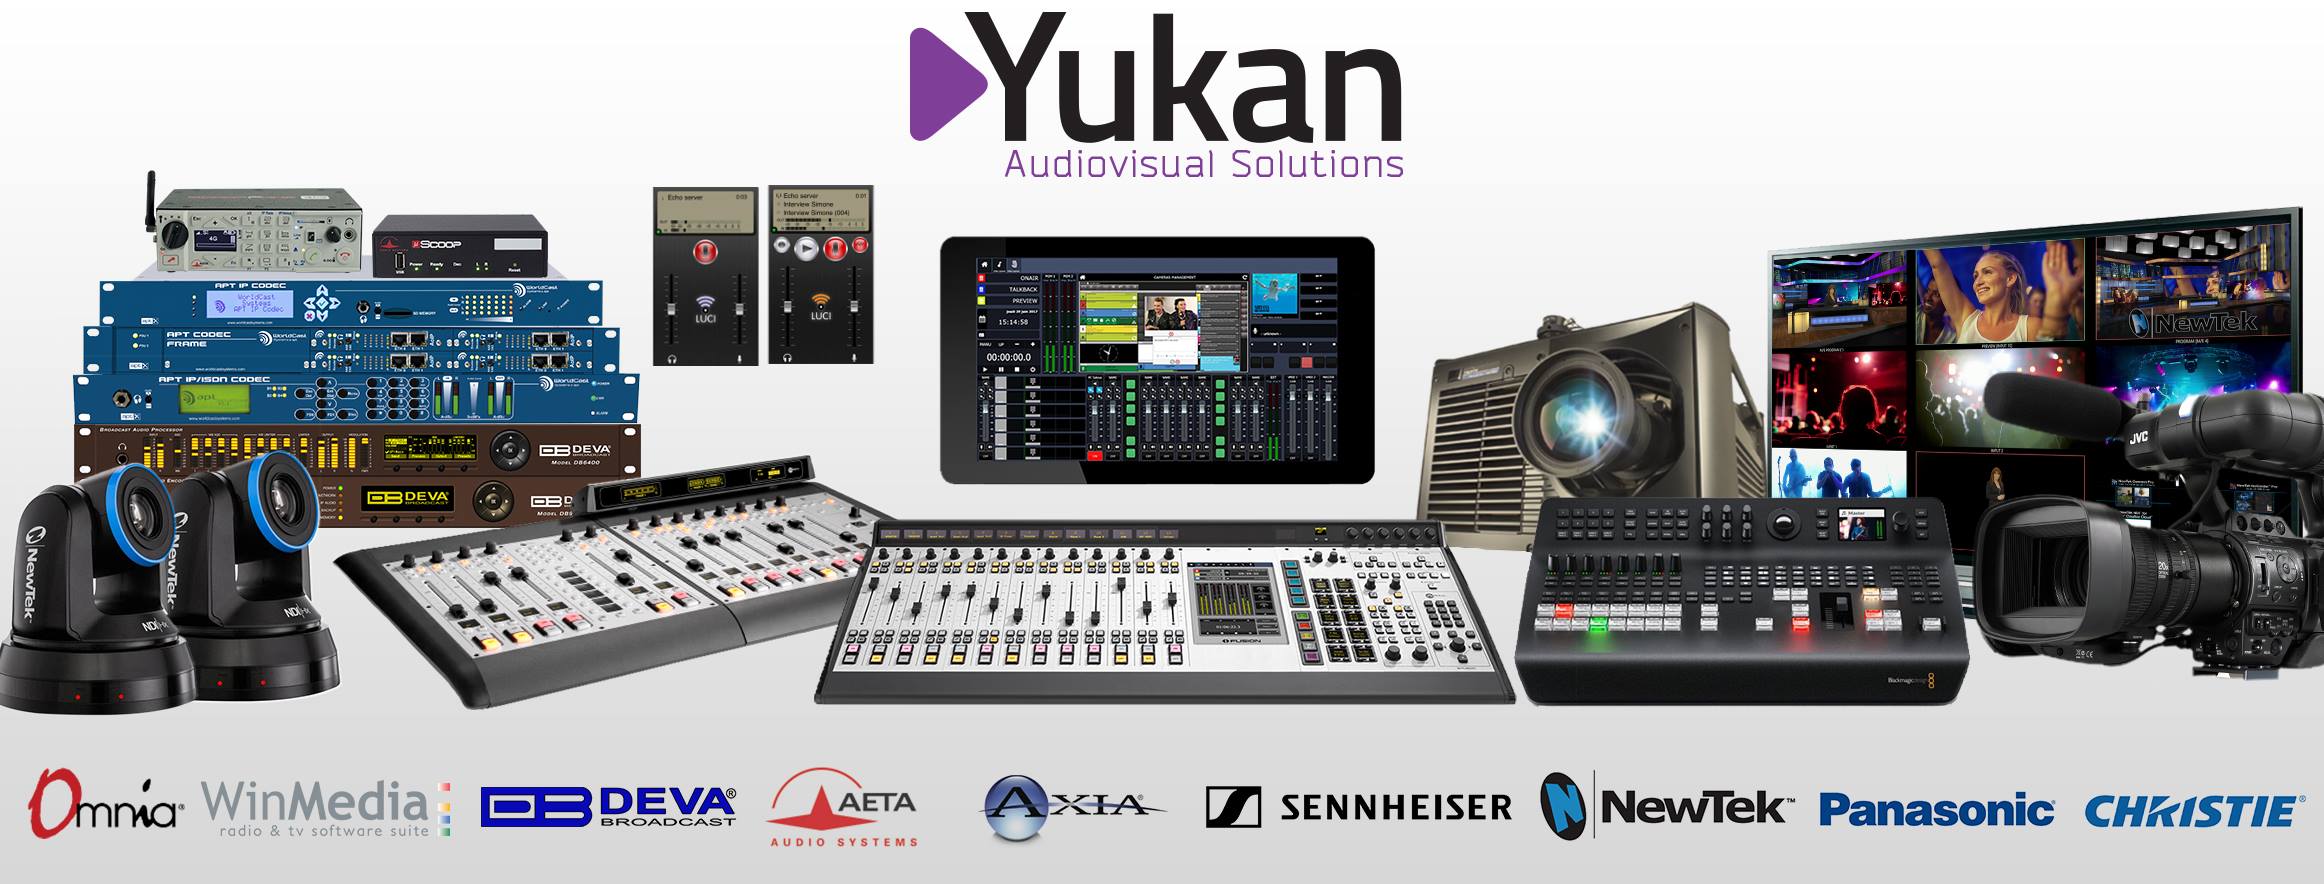 Nouveau site web pour Yukan